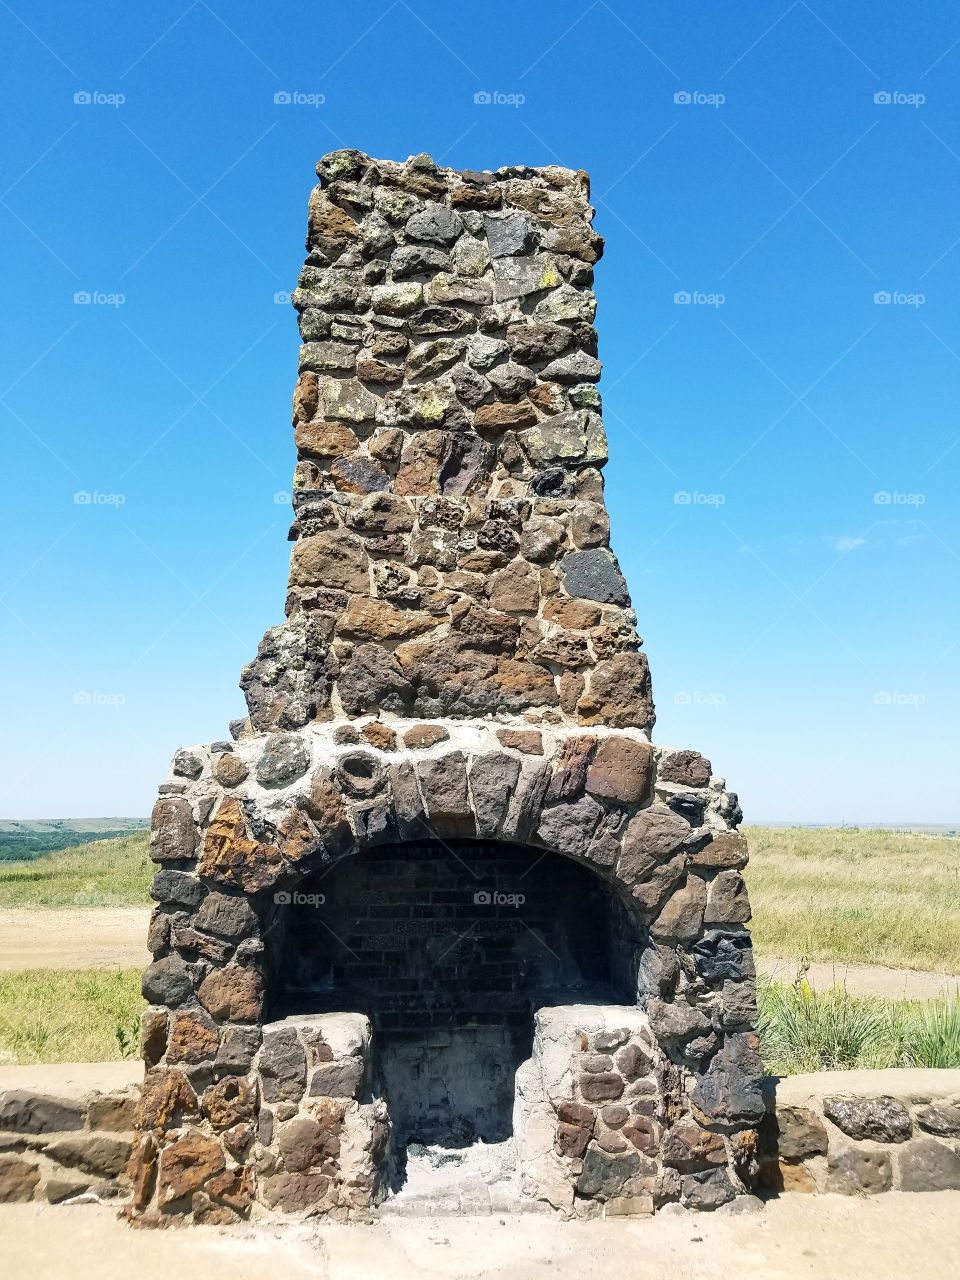 stone oven